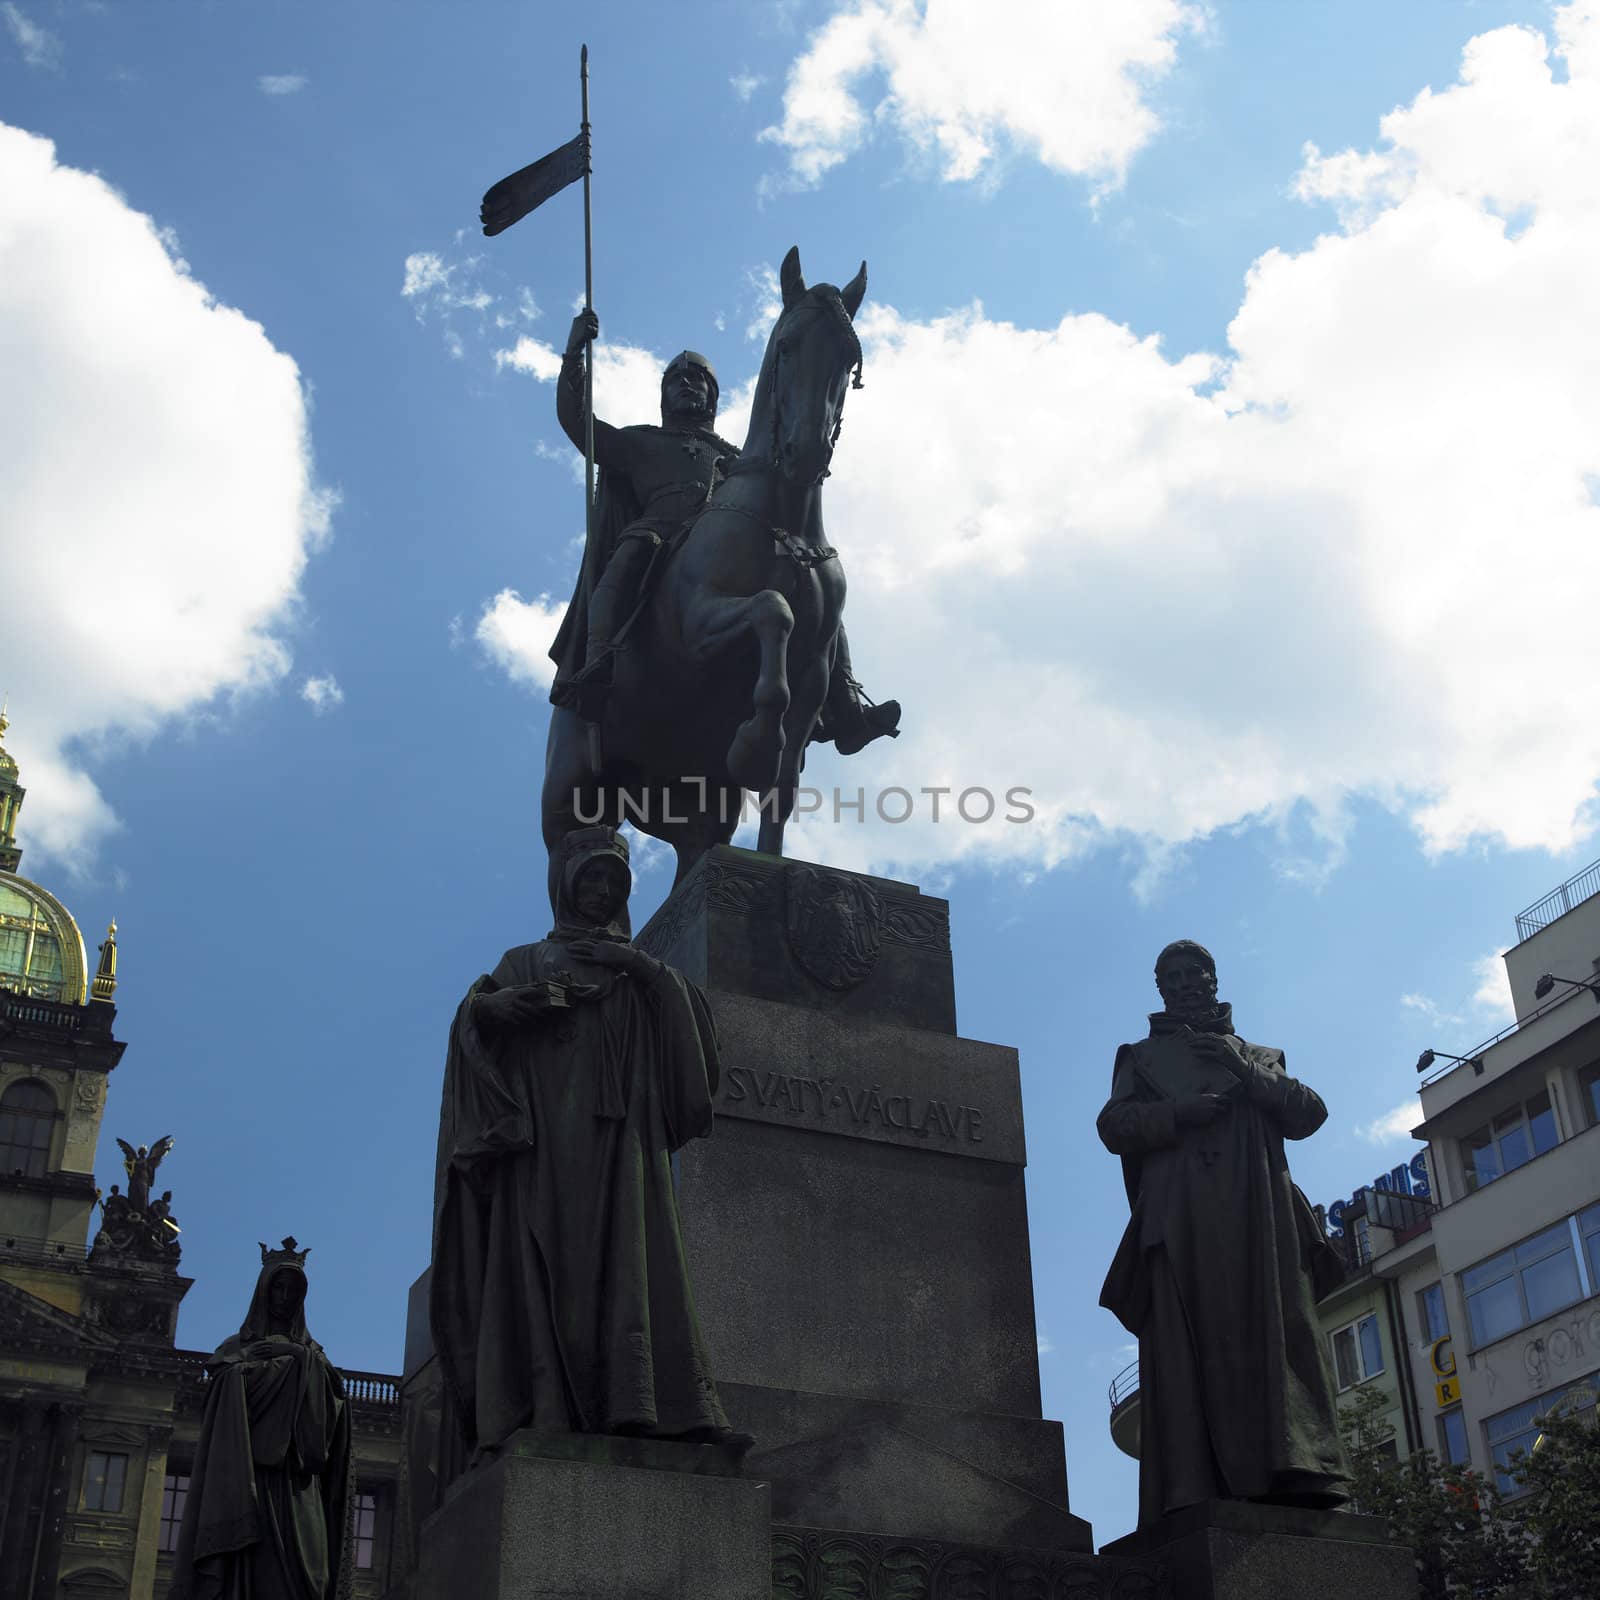 St. Wenceslaw statue, Prague, Czech Republic by phbcz